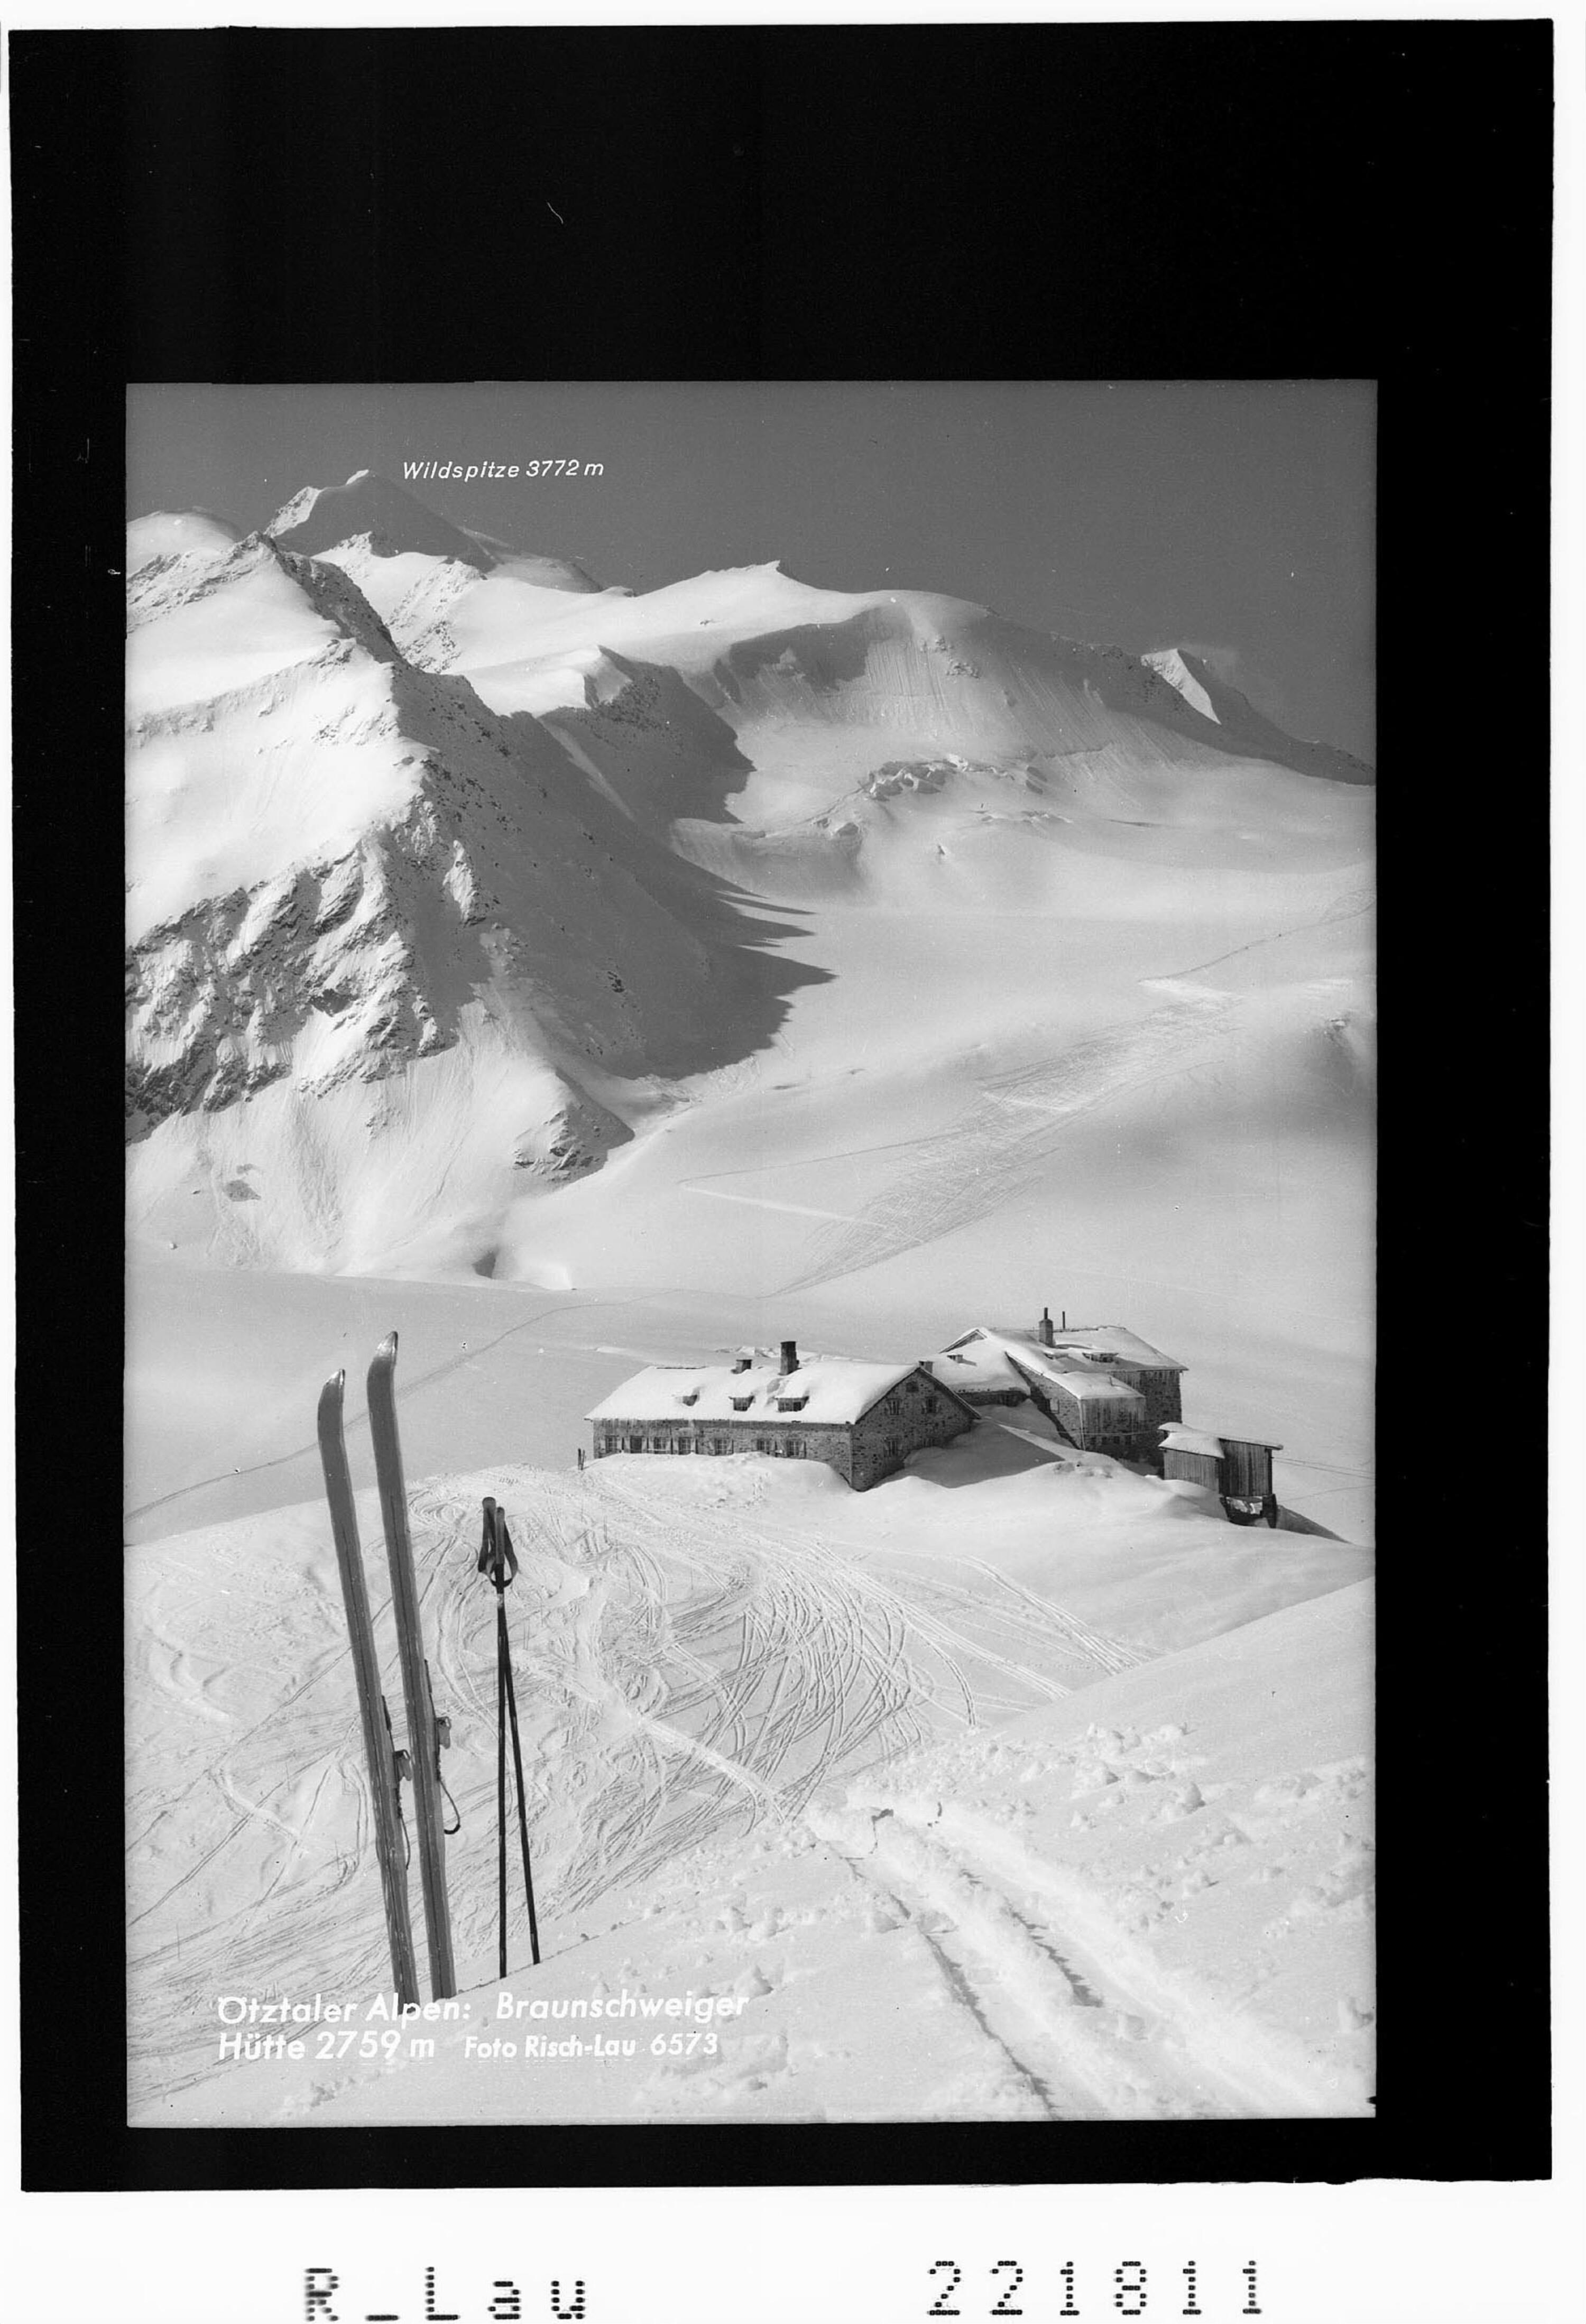 Ötztaler Alpen / Braunschweiger Hütte 2759 m></div>


    <hr>
    <div class=